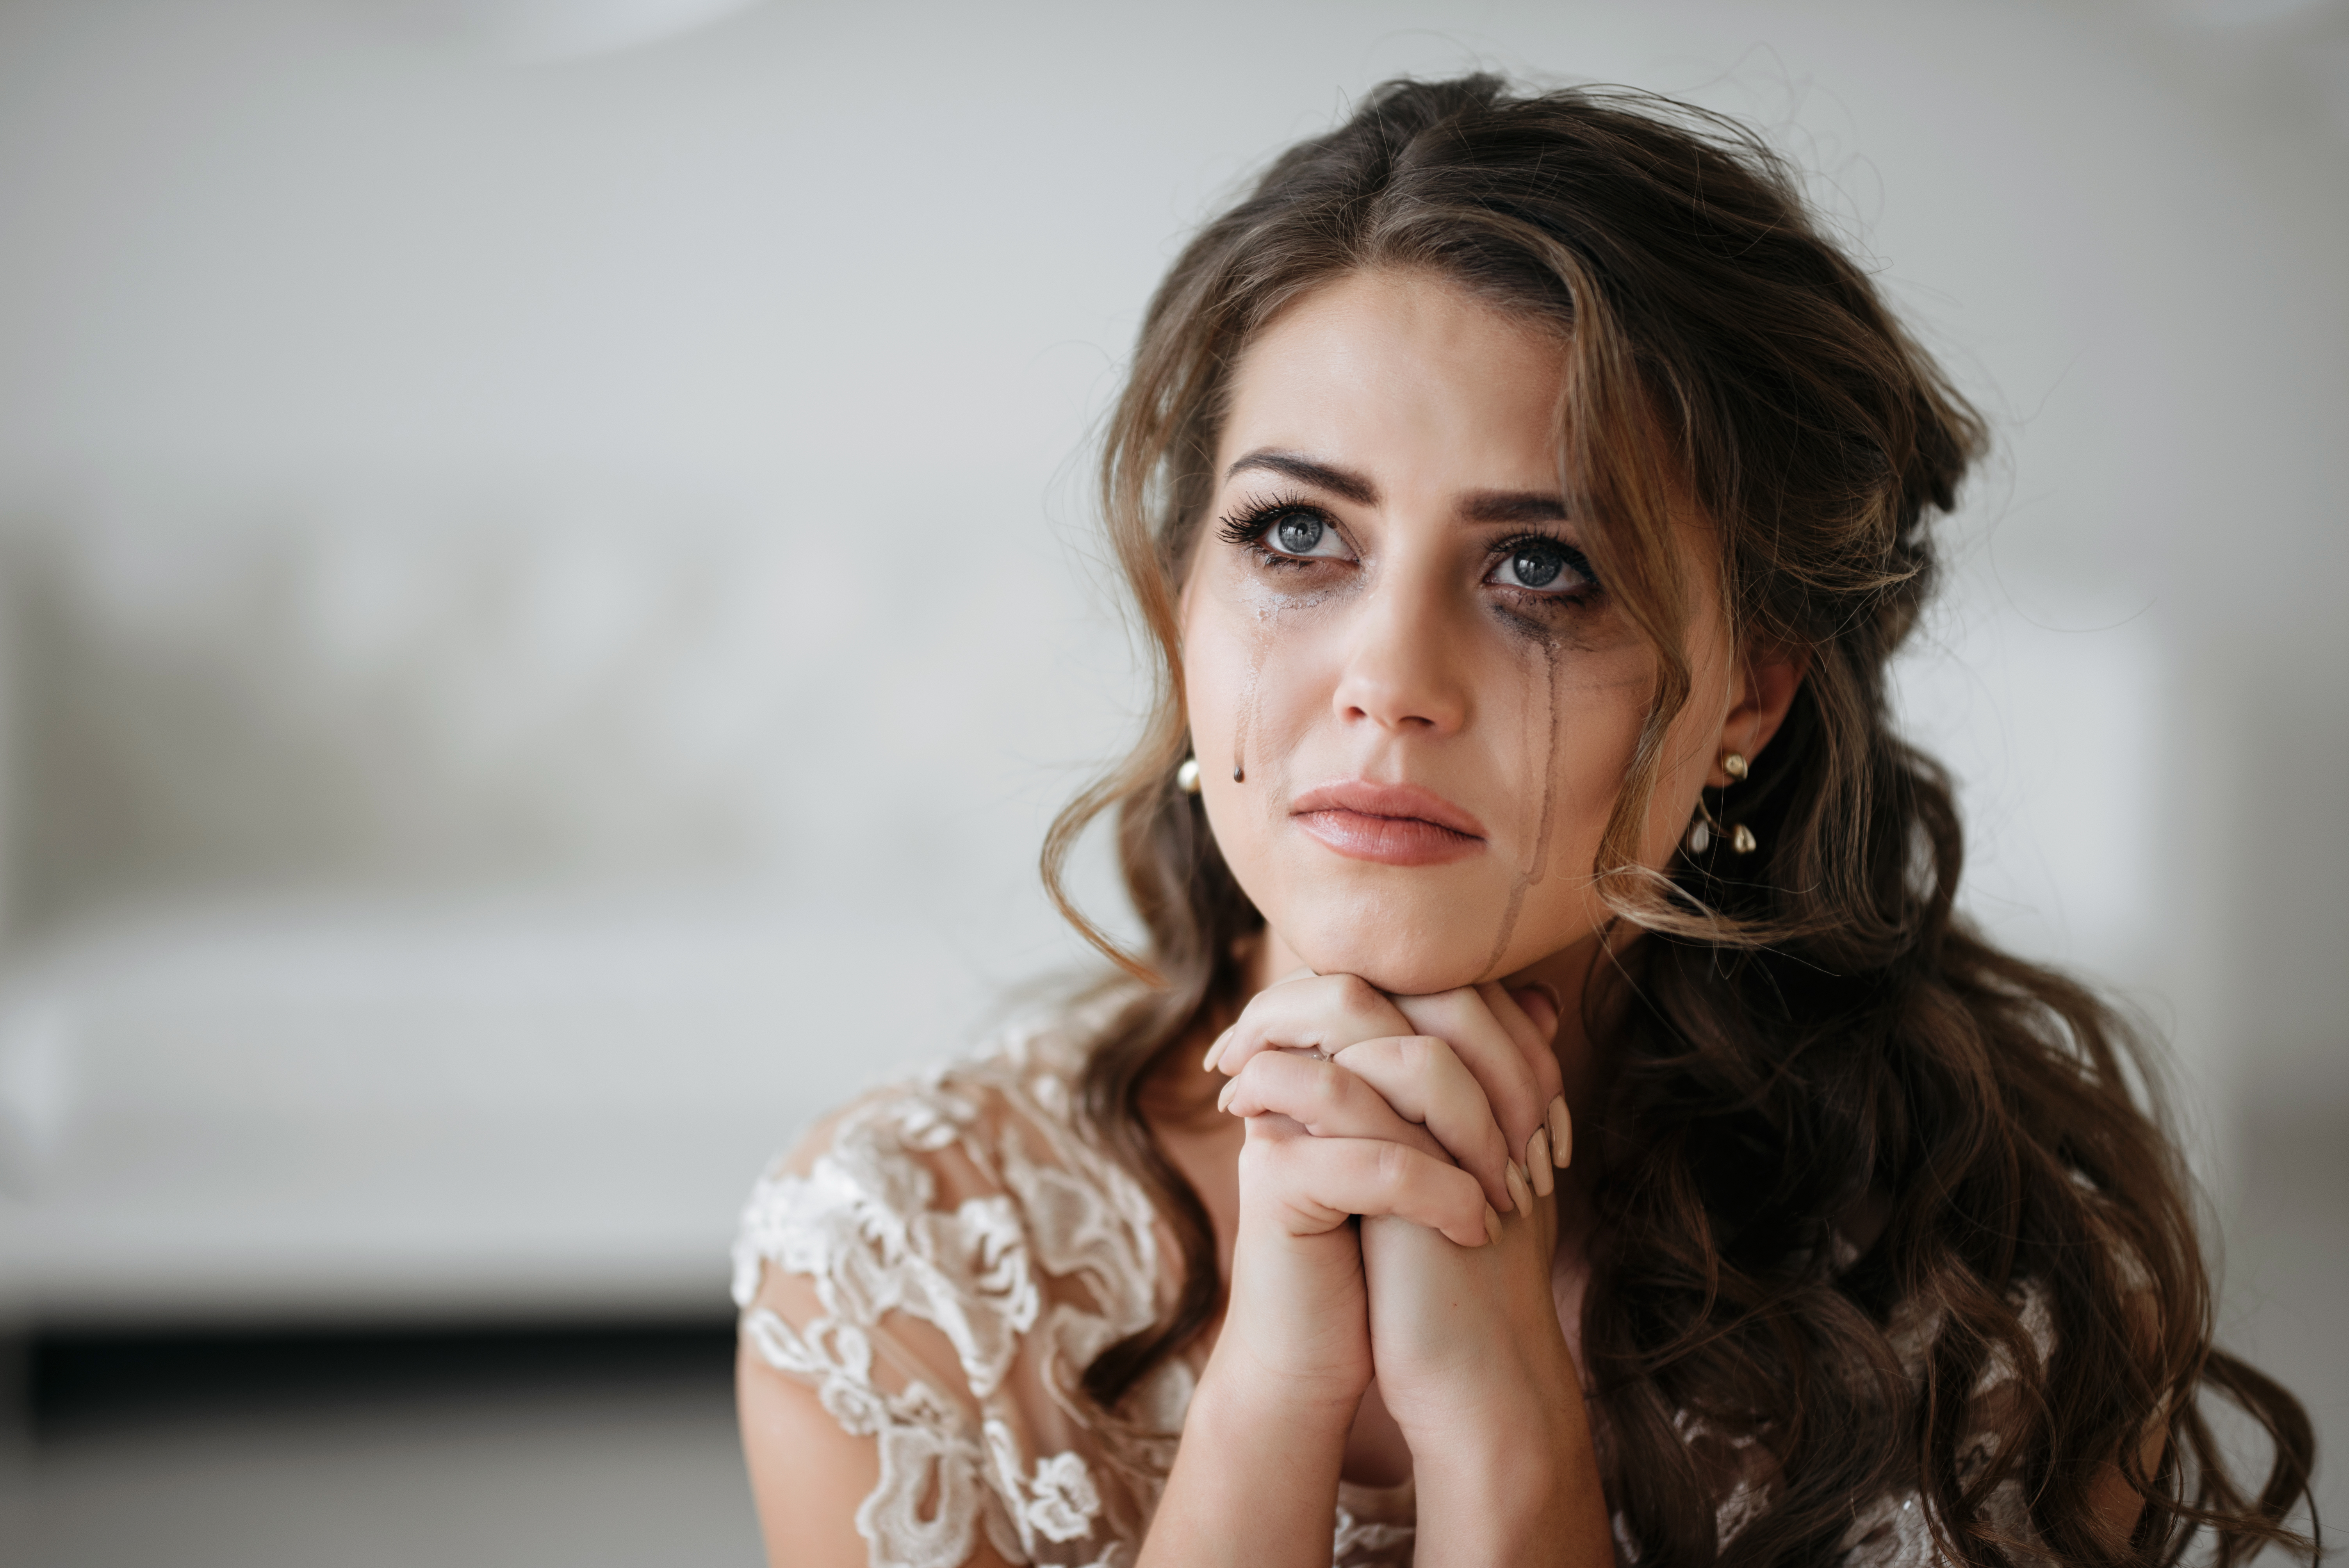 El maquillaje de una novia se estropea tras su crisis emocional. | Foto: Shutterstock